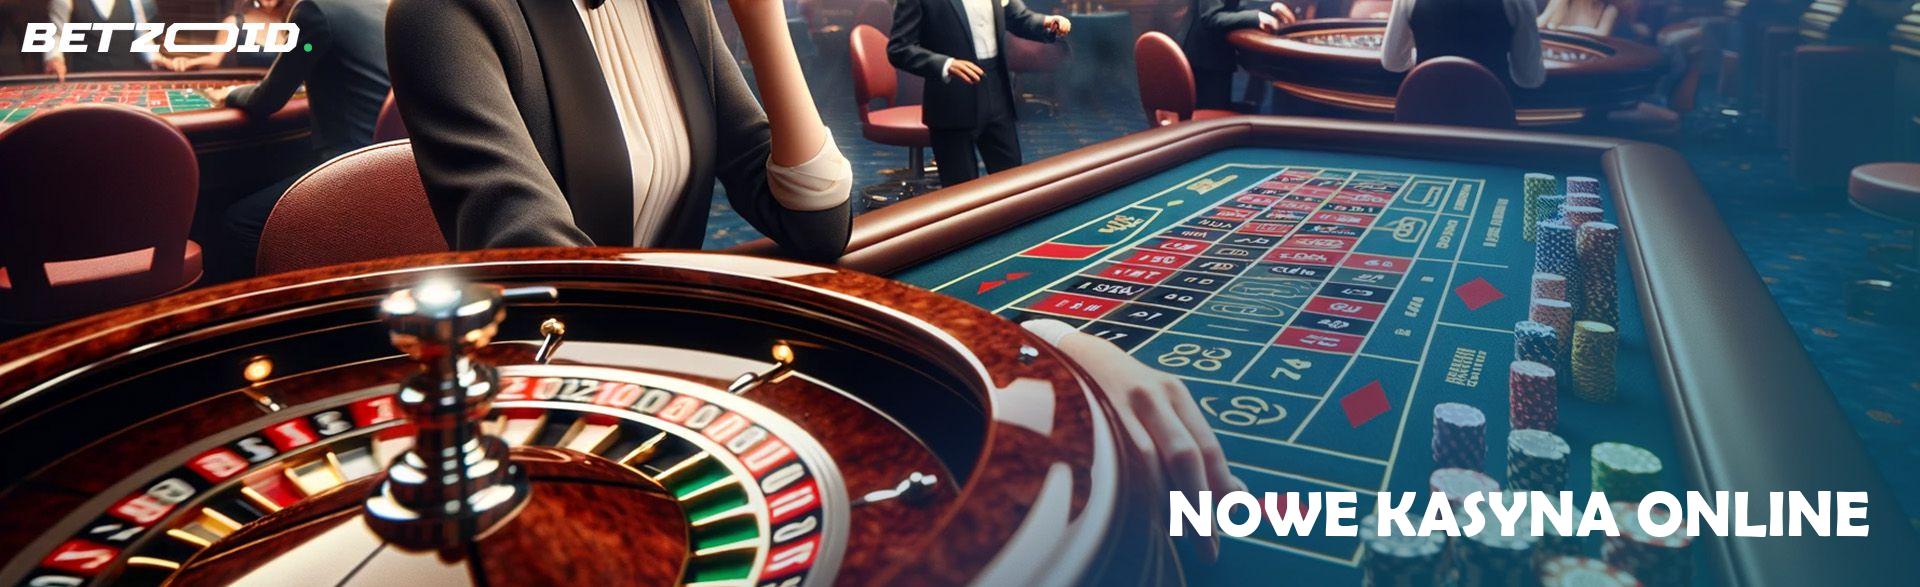 10 kreatywnych sposobów na ulepszenie nowe kasyna online bonus bez depozytu